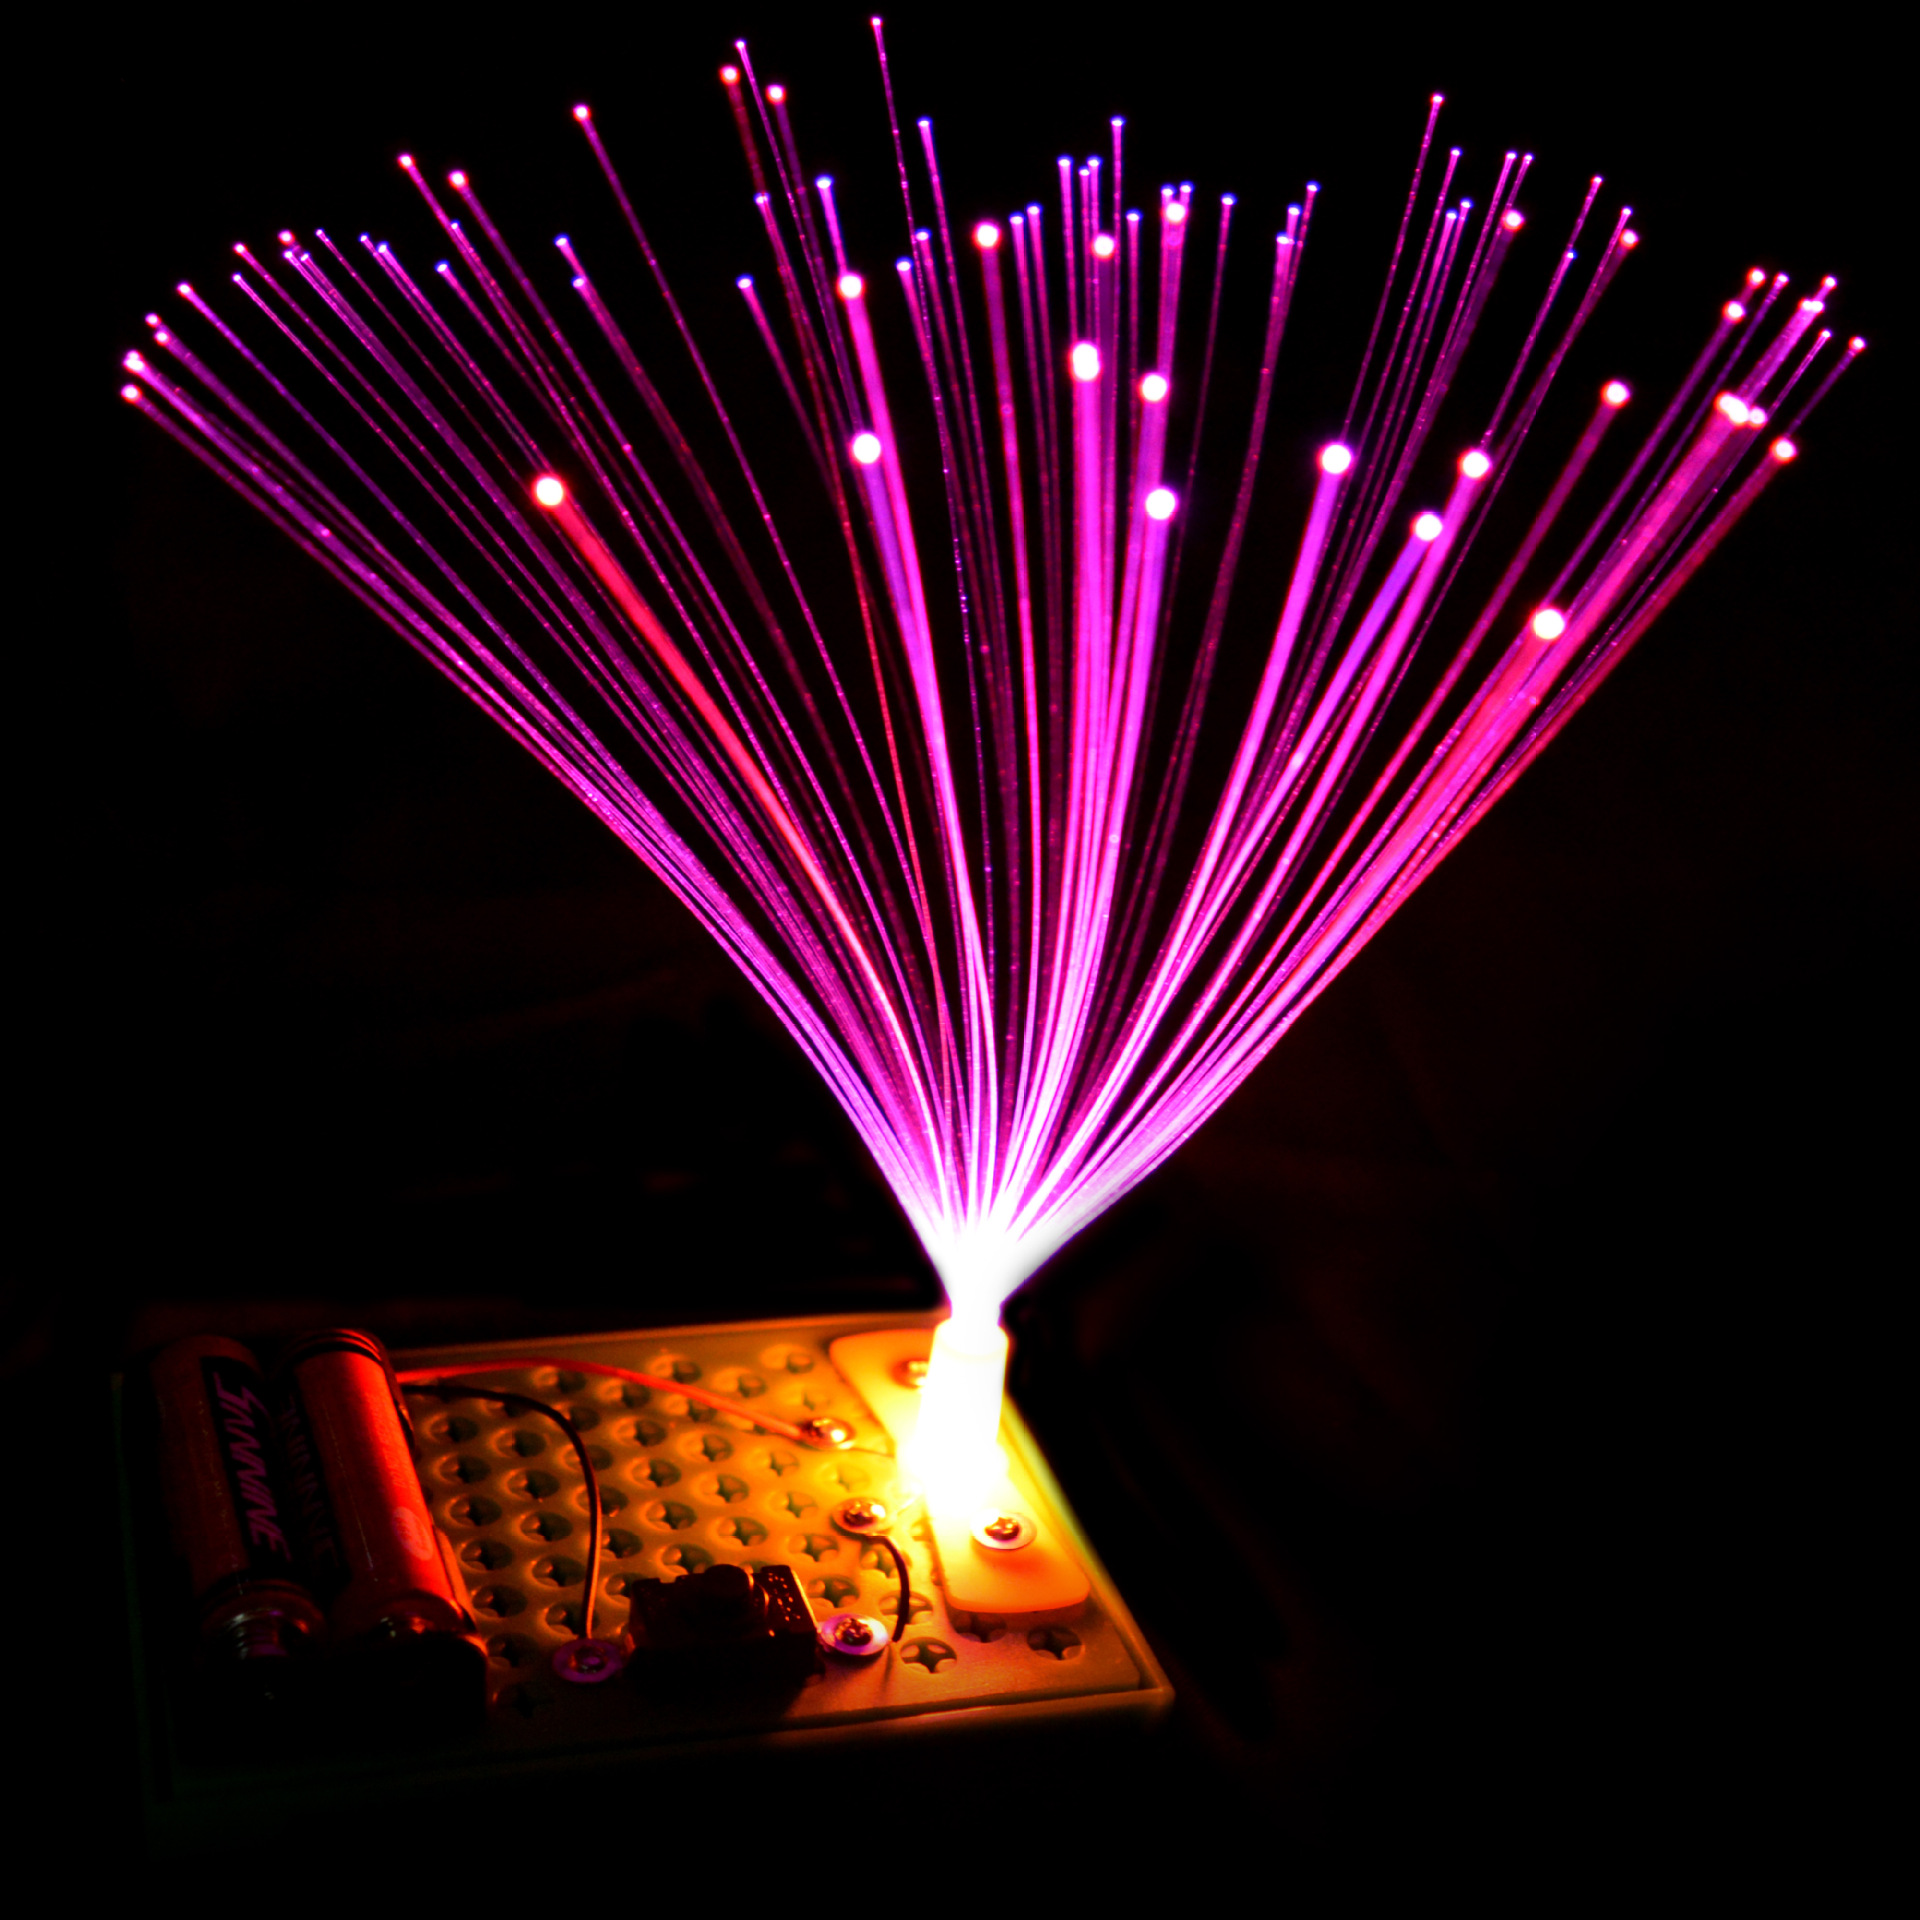 diy光纤灯 七彩led光纤灯,科技小制作,diy科普器材科学实验玩具